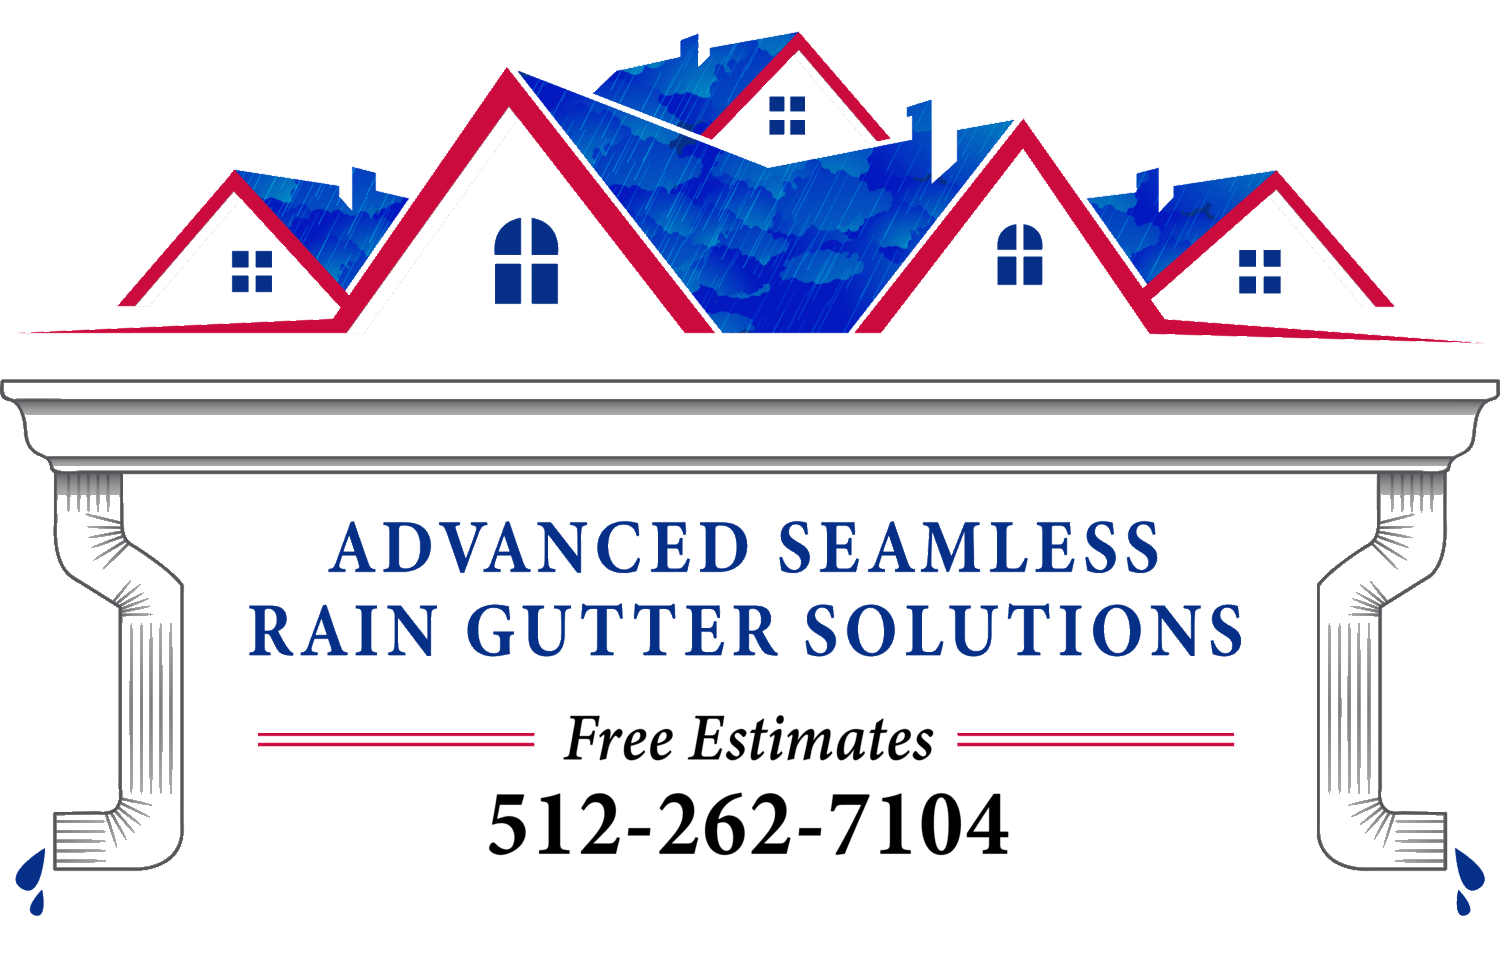 Advanced Seamless Rain Gutter Solutions                  457 Evening Star, Kyle, TX 78640 (512) 262-7104